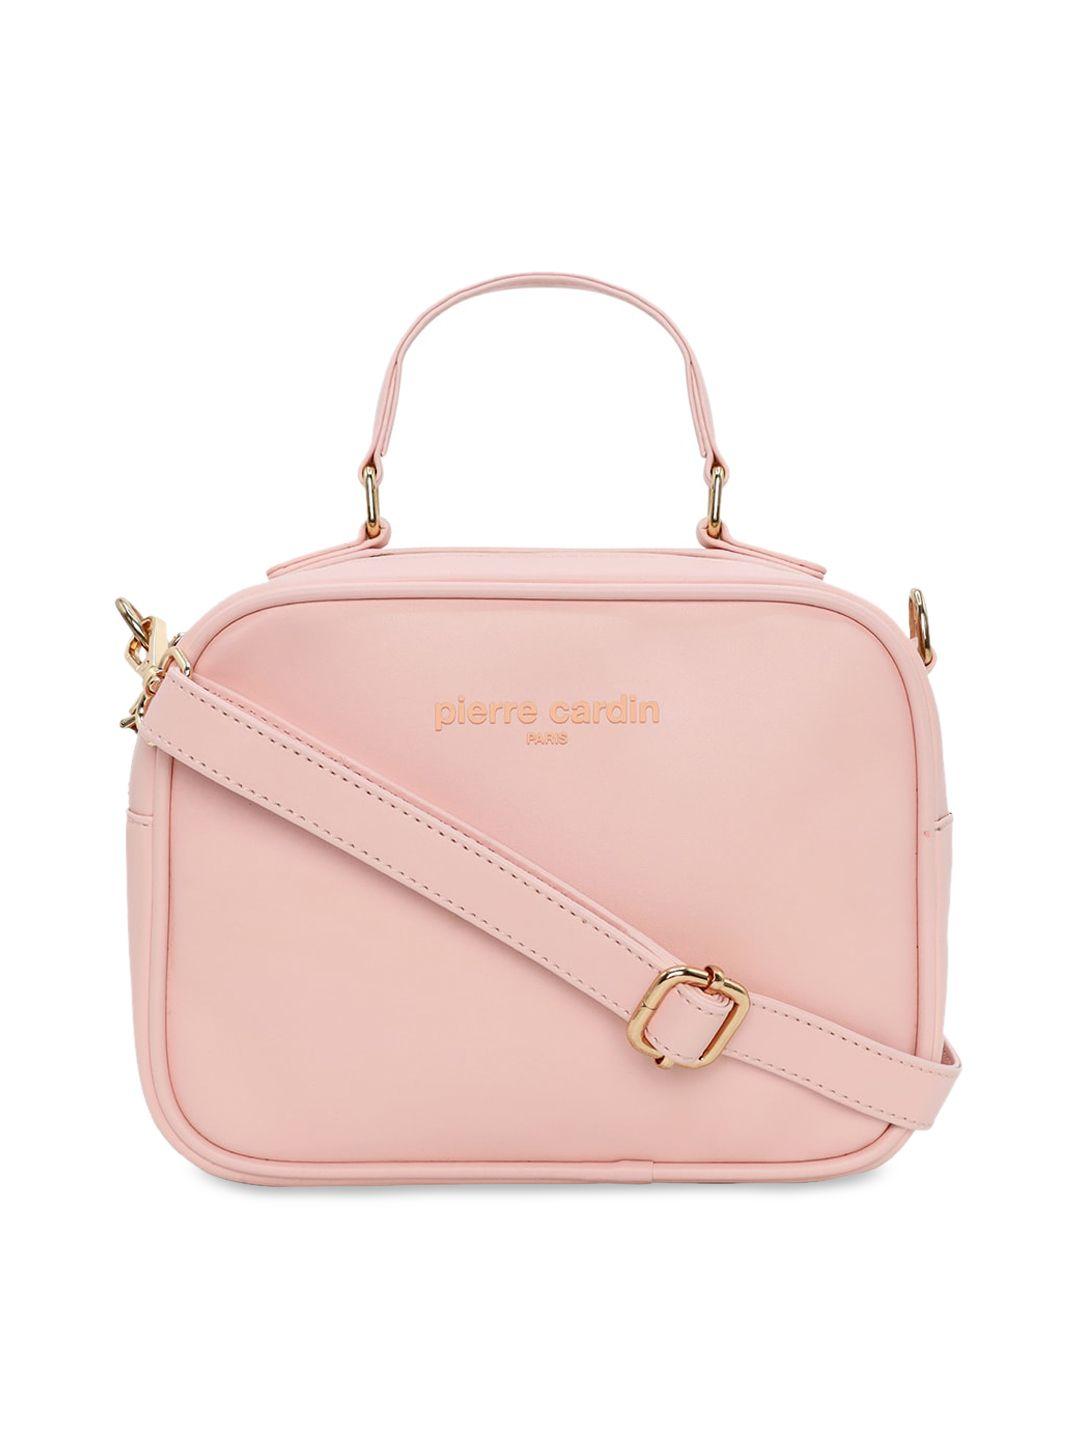 pierre cardin women pink solid sling bag